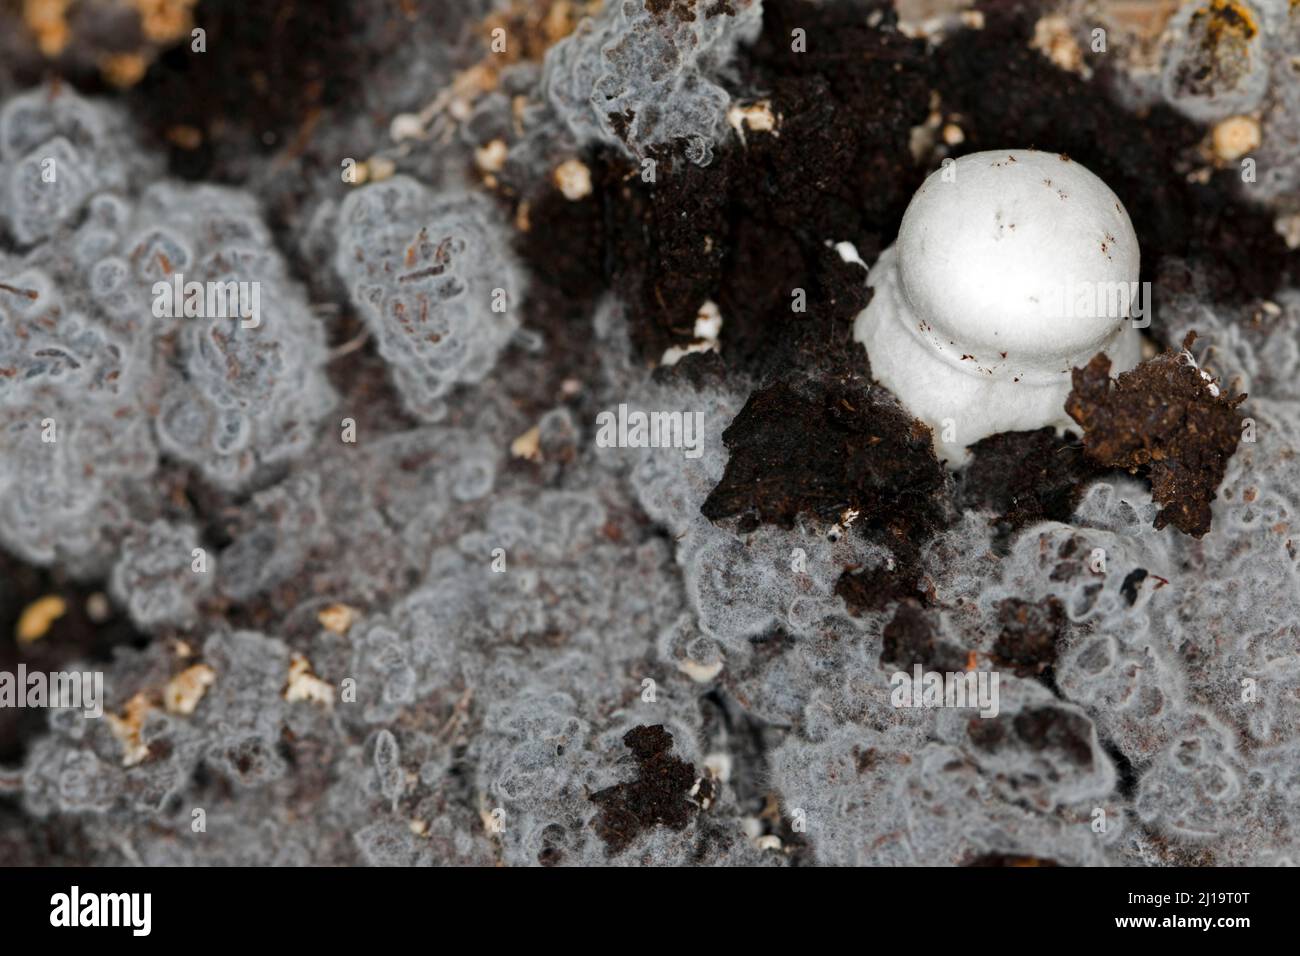 https://c8.alamy.com/compfr/2j19t0t/le-champignon-blanc-agaricus-arvensis-sur-le-mycelium-du-champignon-2j19t0t.jpg